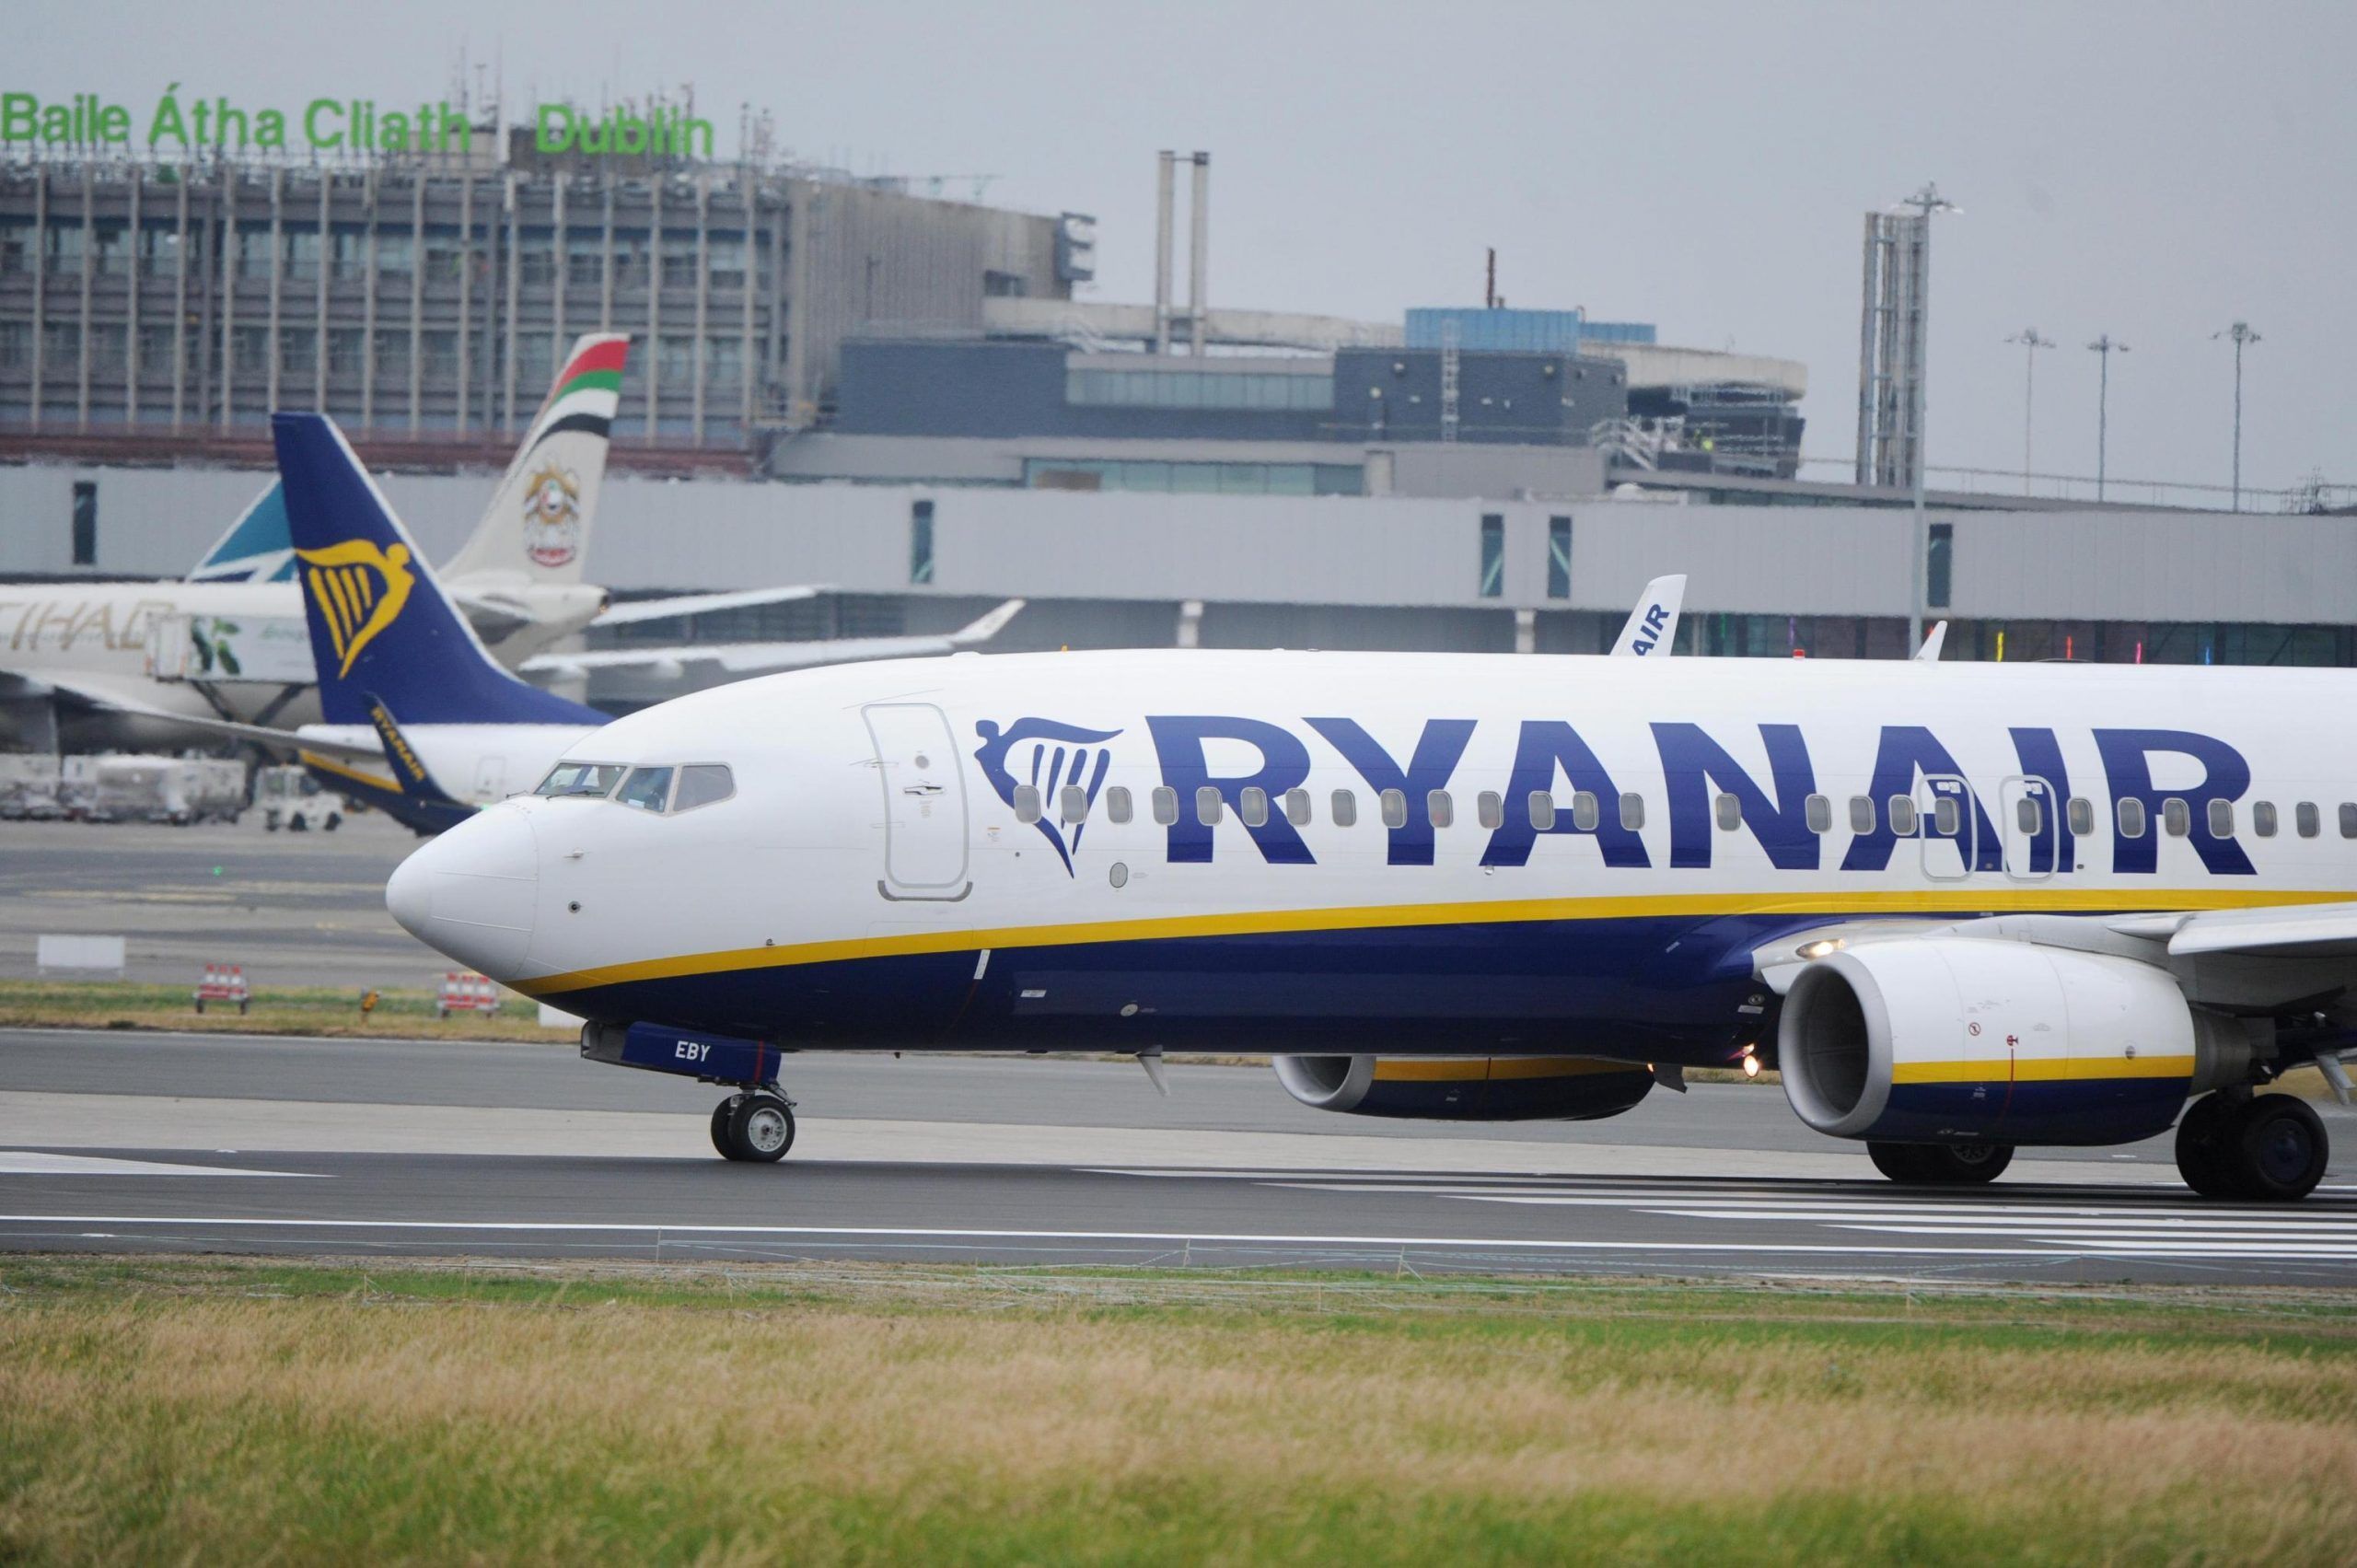 Sciopero aerei 25 e 26 luglio: Ryanair cancella 600 voli